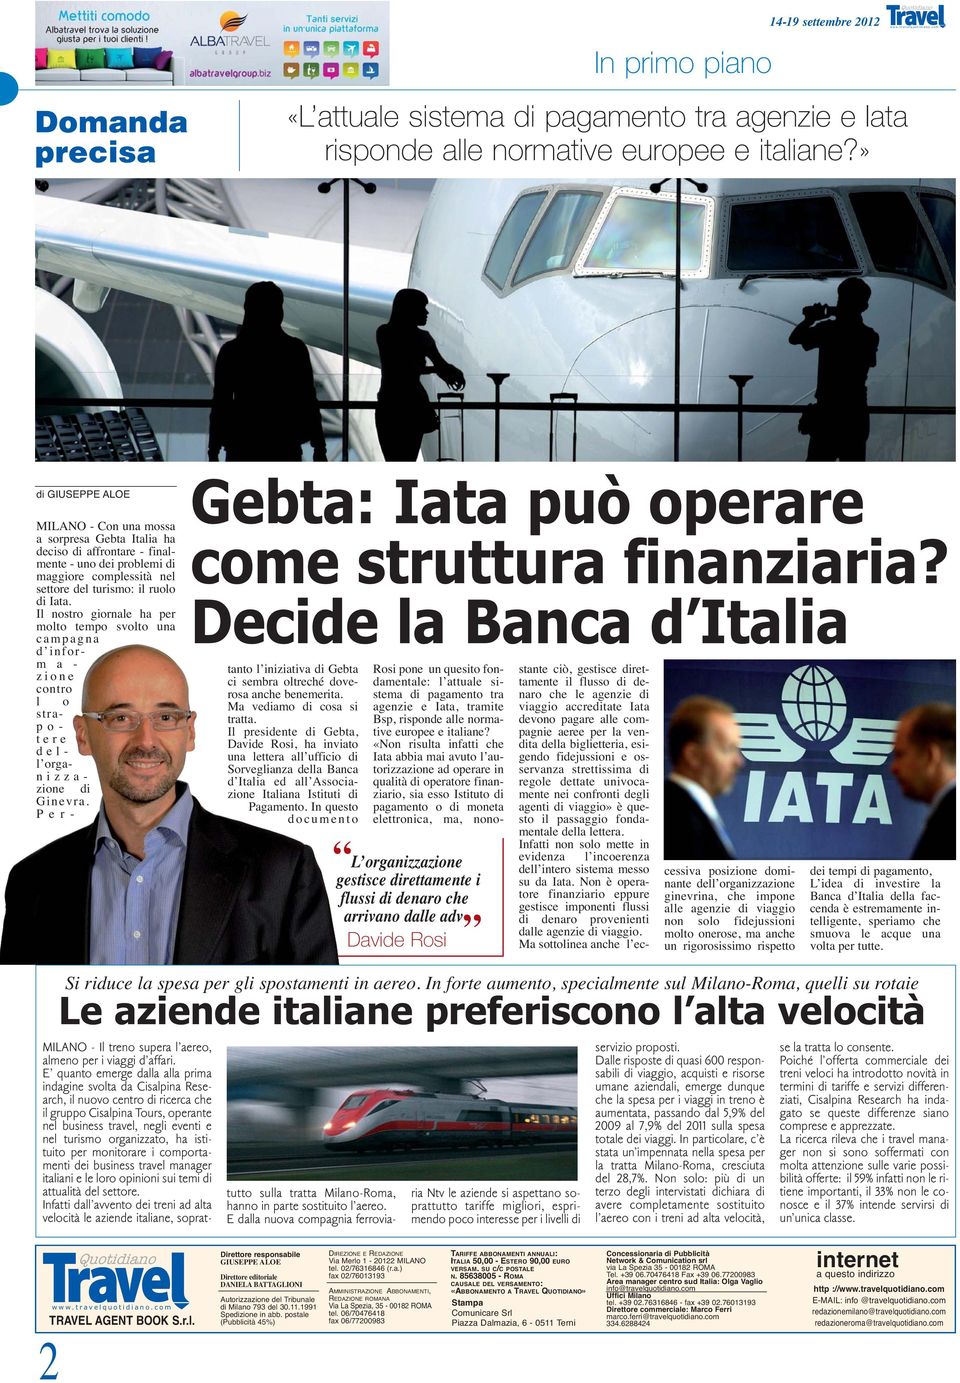 Decide la Banca d Italia MILANO - Con una mossa a sorpresa Gebta Italia ha deciso di affrontare - finalmente - uno dei problemi di maggiore complessità nel settore del turismo: il ruolo di Iata.